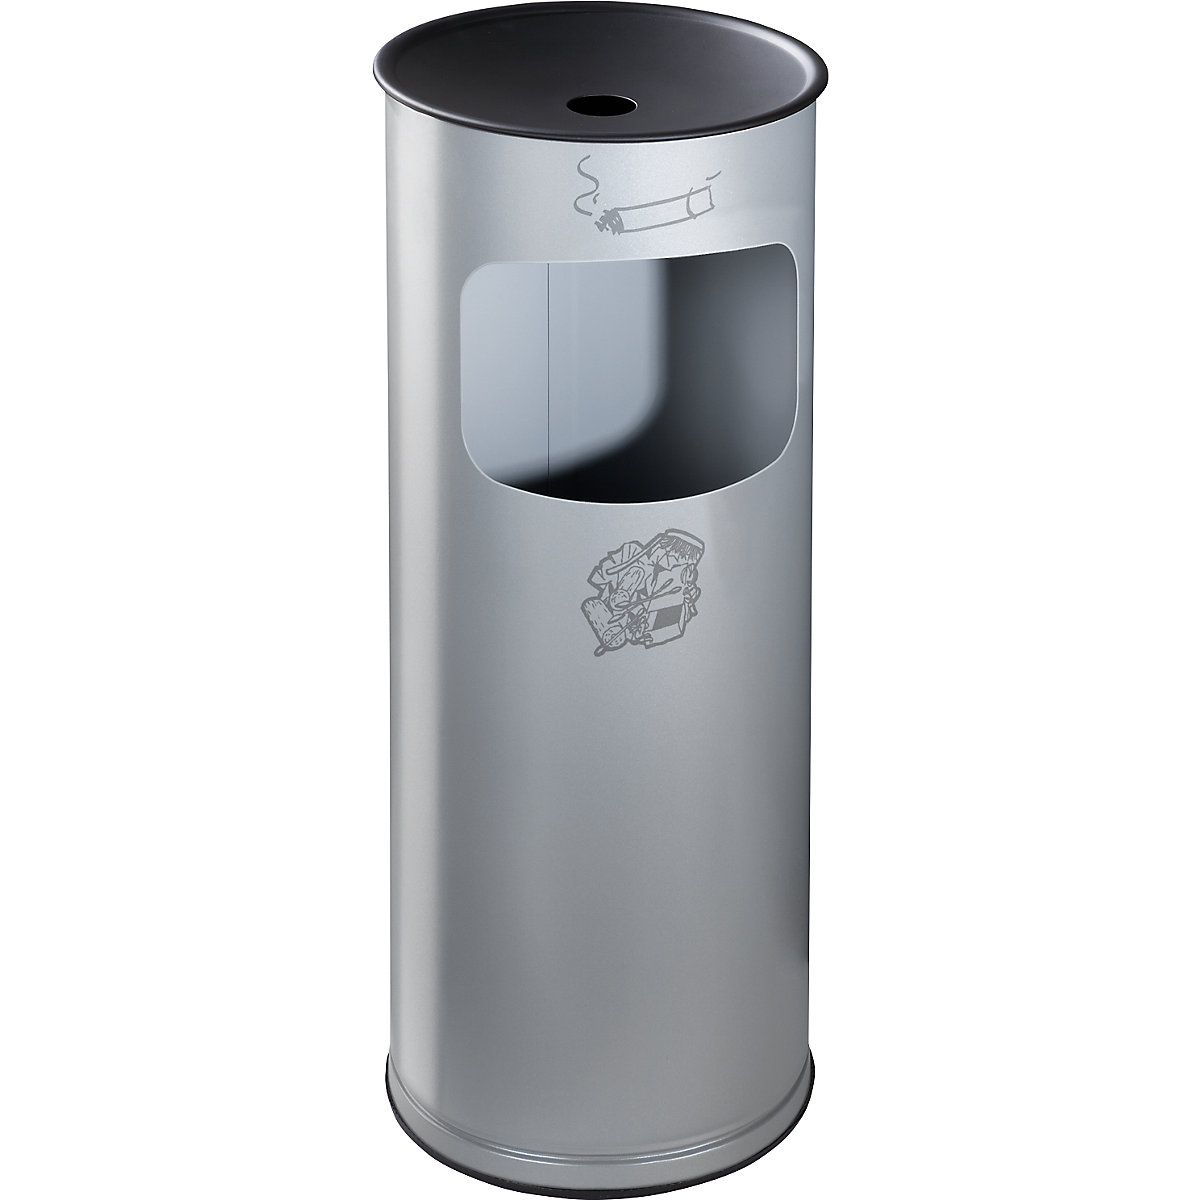 VAR – Bezpečnostní kombinovaný popelník, ocelový plech, objem 17 l, v x Ø 610 x 250 mm, stříbrná